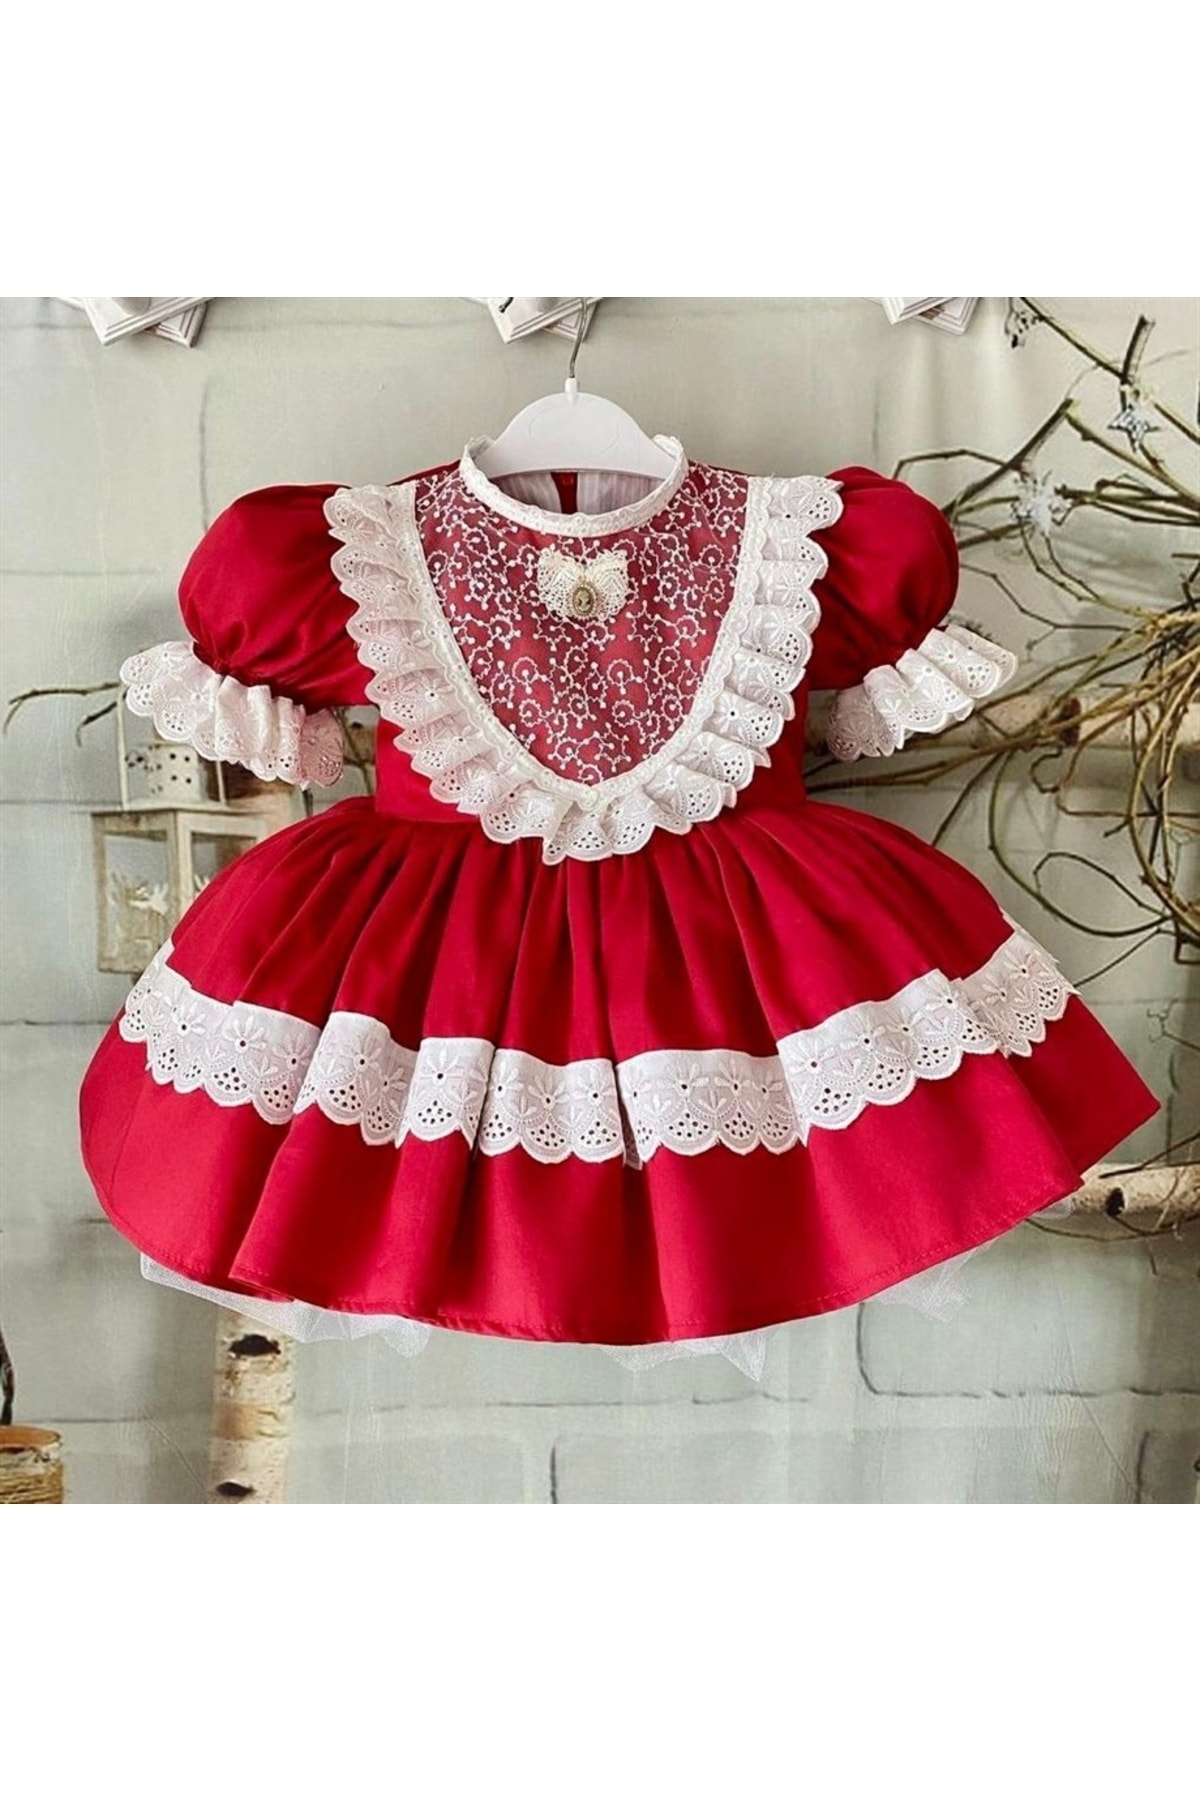 Hly Karol Tasarım Kırmızı Vintage Kız Bebek Elbisesi, Özel Dikim Kız Çocuk Elbisesi, Doğum Günü Elbisesi, Fotoğraf Çek